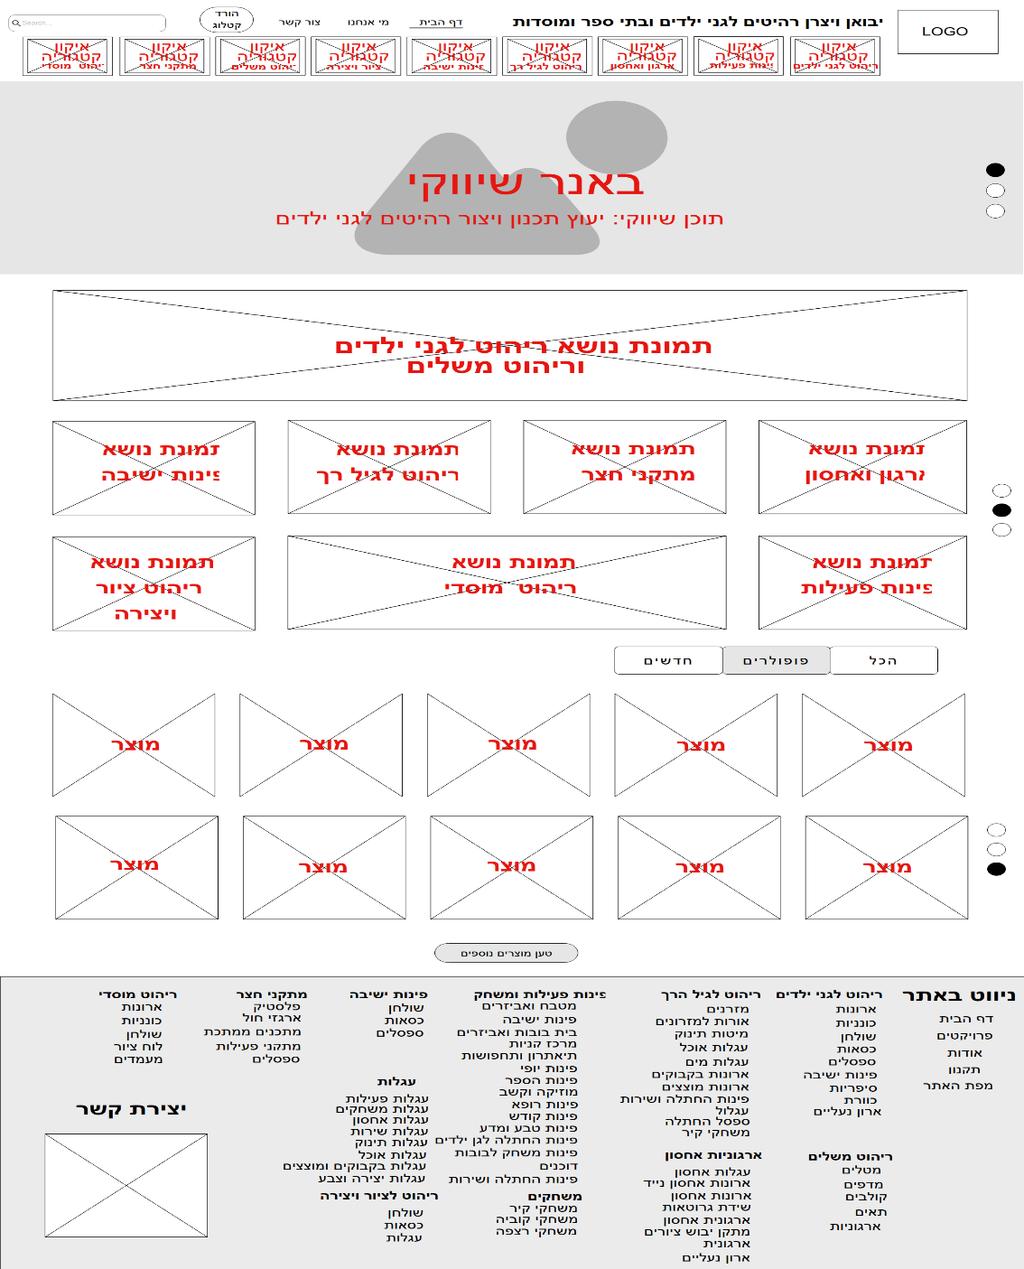 עמוד 14 מתוך 22 שרטוט / סקיצה טכנית הגדרת כל מרכיבי האתר בניית סקיצה טכנית לכל מרכיבי האתר בעמוד.